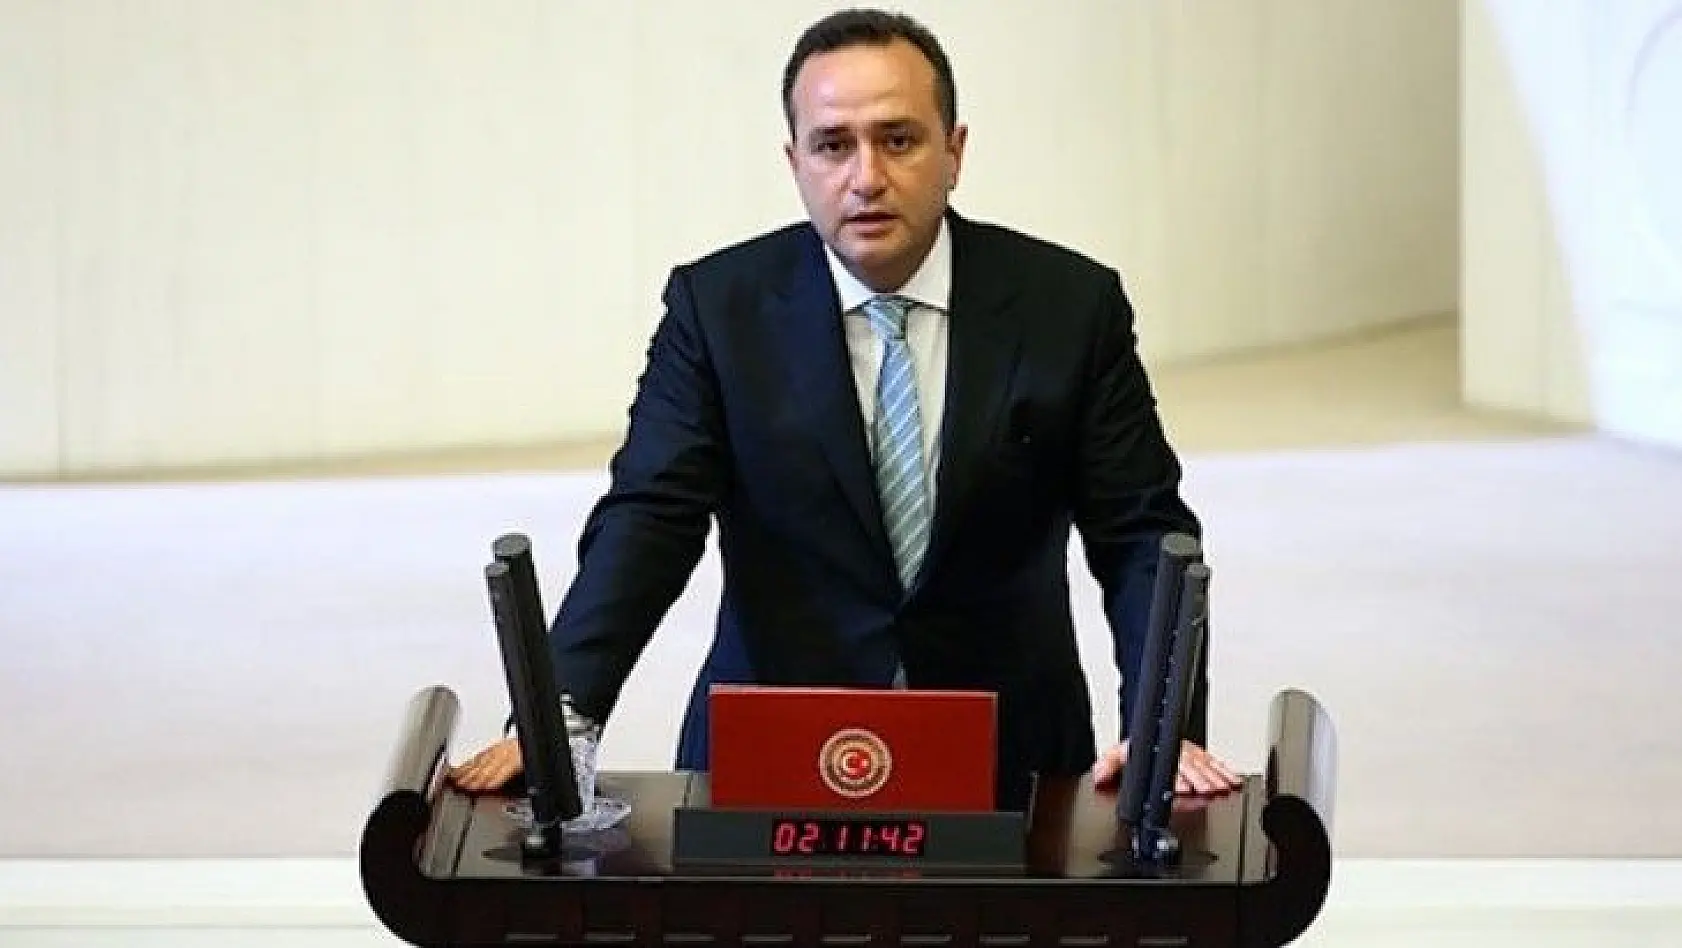 Milletvekili Ağar'dan Sert Yalanlama:  'Adı geçen gazeteciyi tanımam'